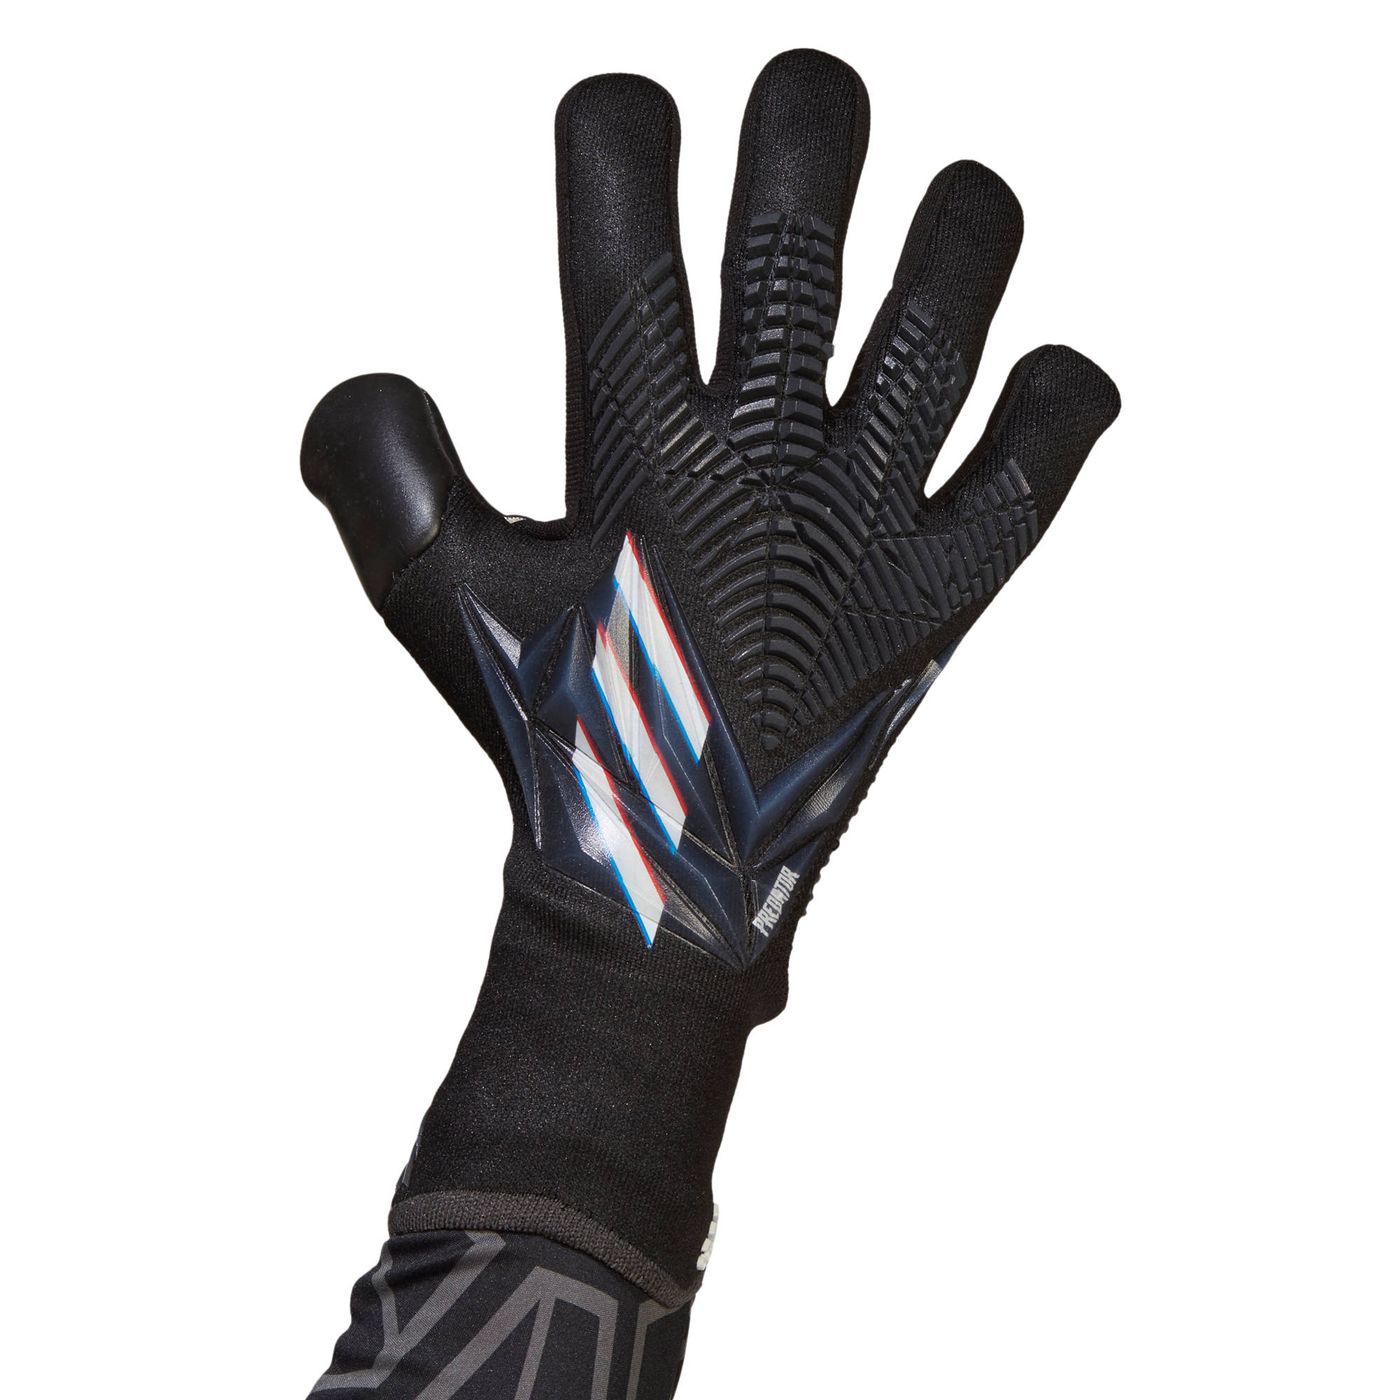 Вратарские перчатки Adidas Predator GL Pro купить